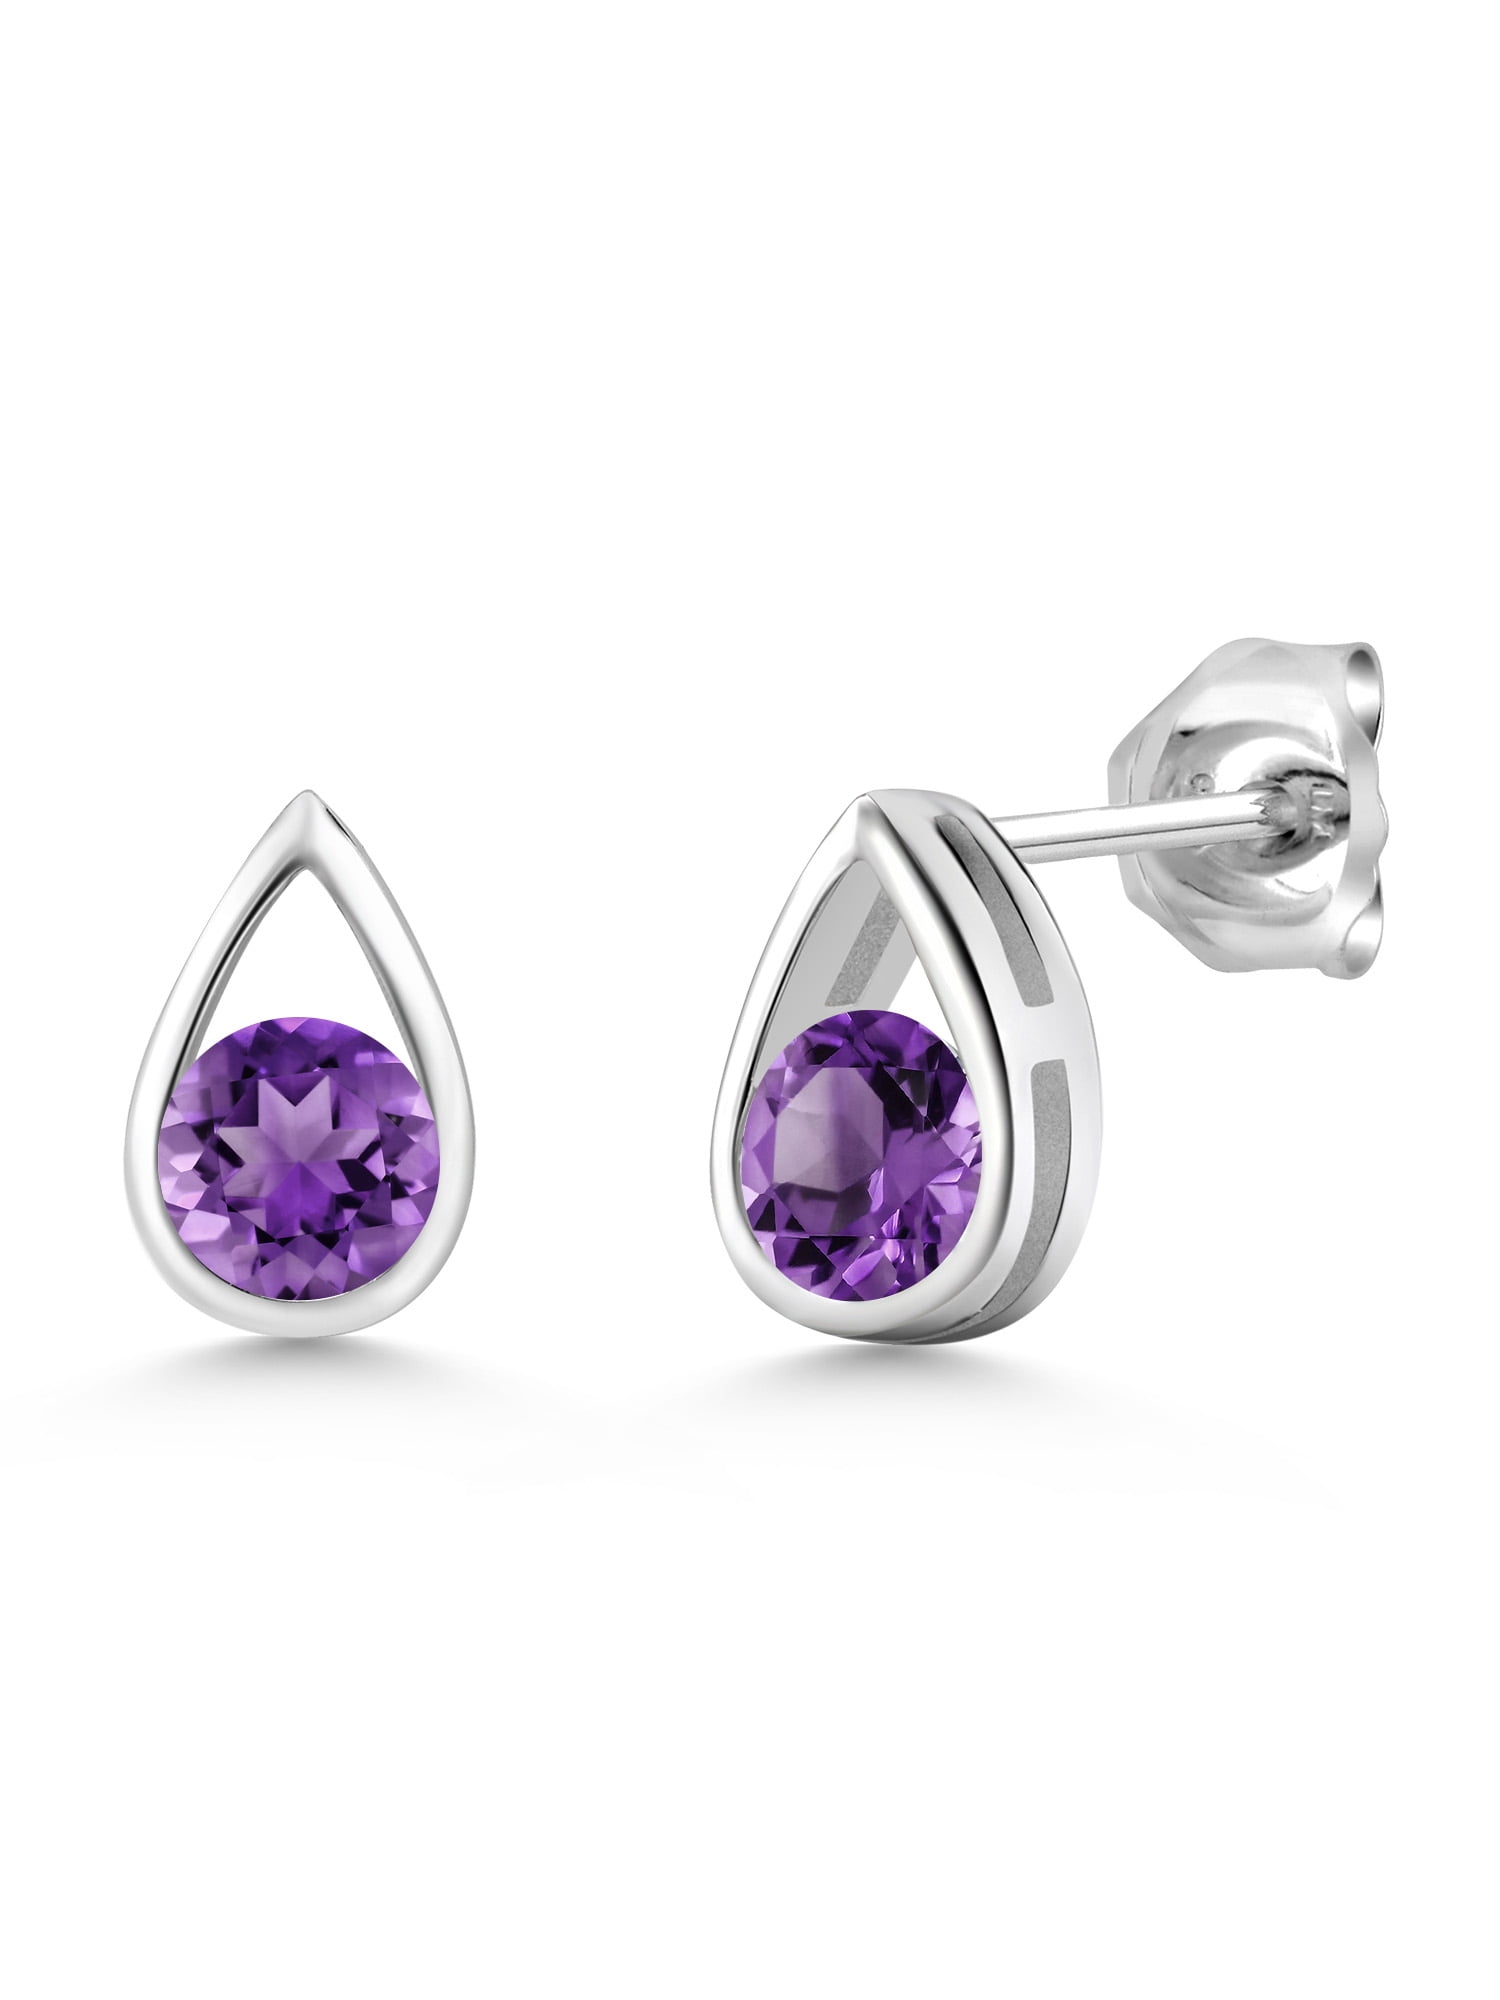 3.80 Ct Oval Purple Amethyst 925 Sterling Silver Earrings 